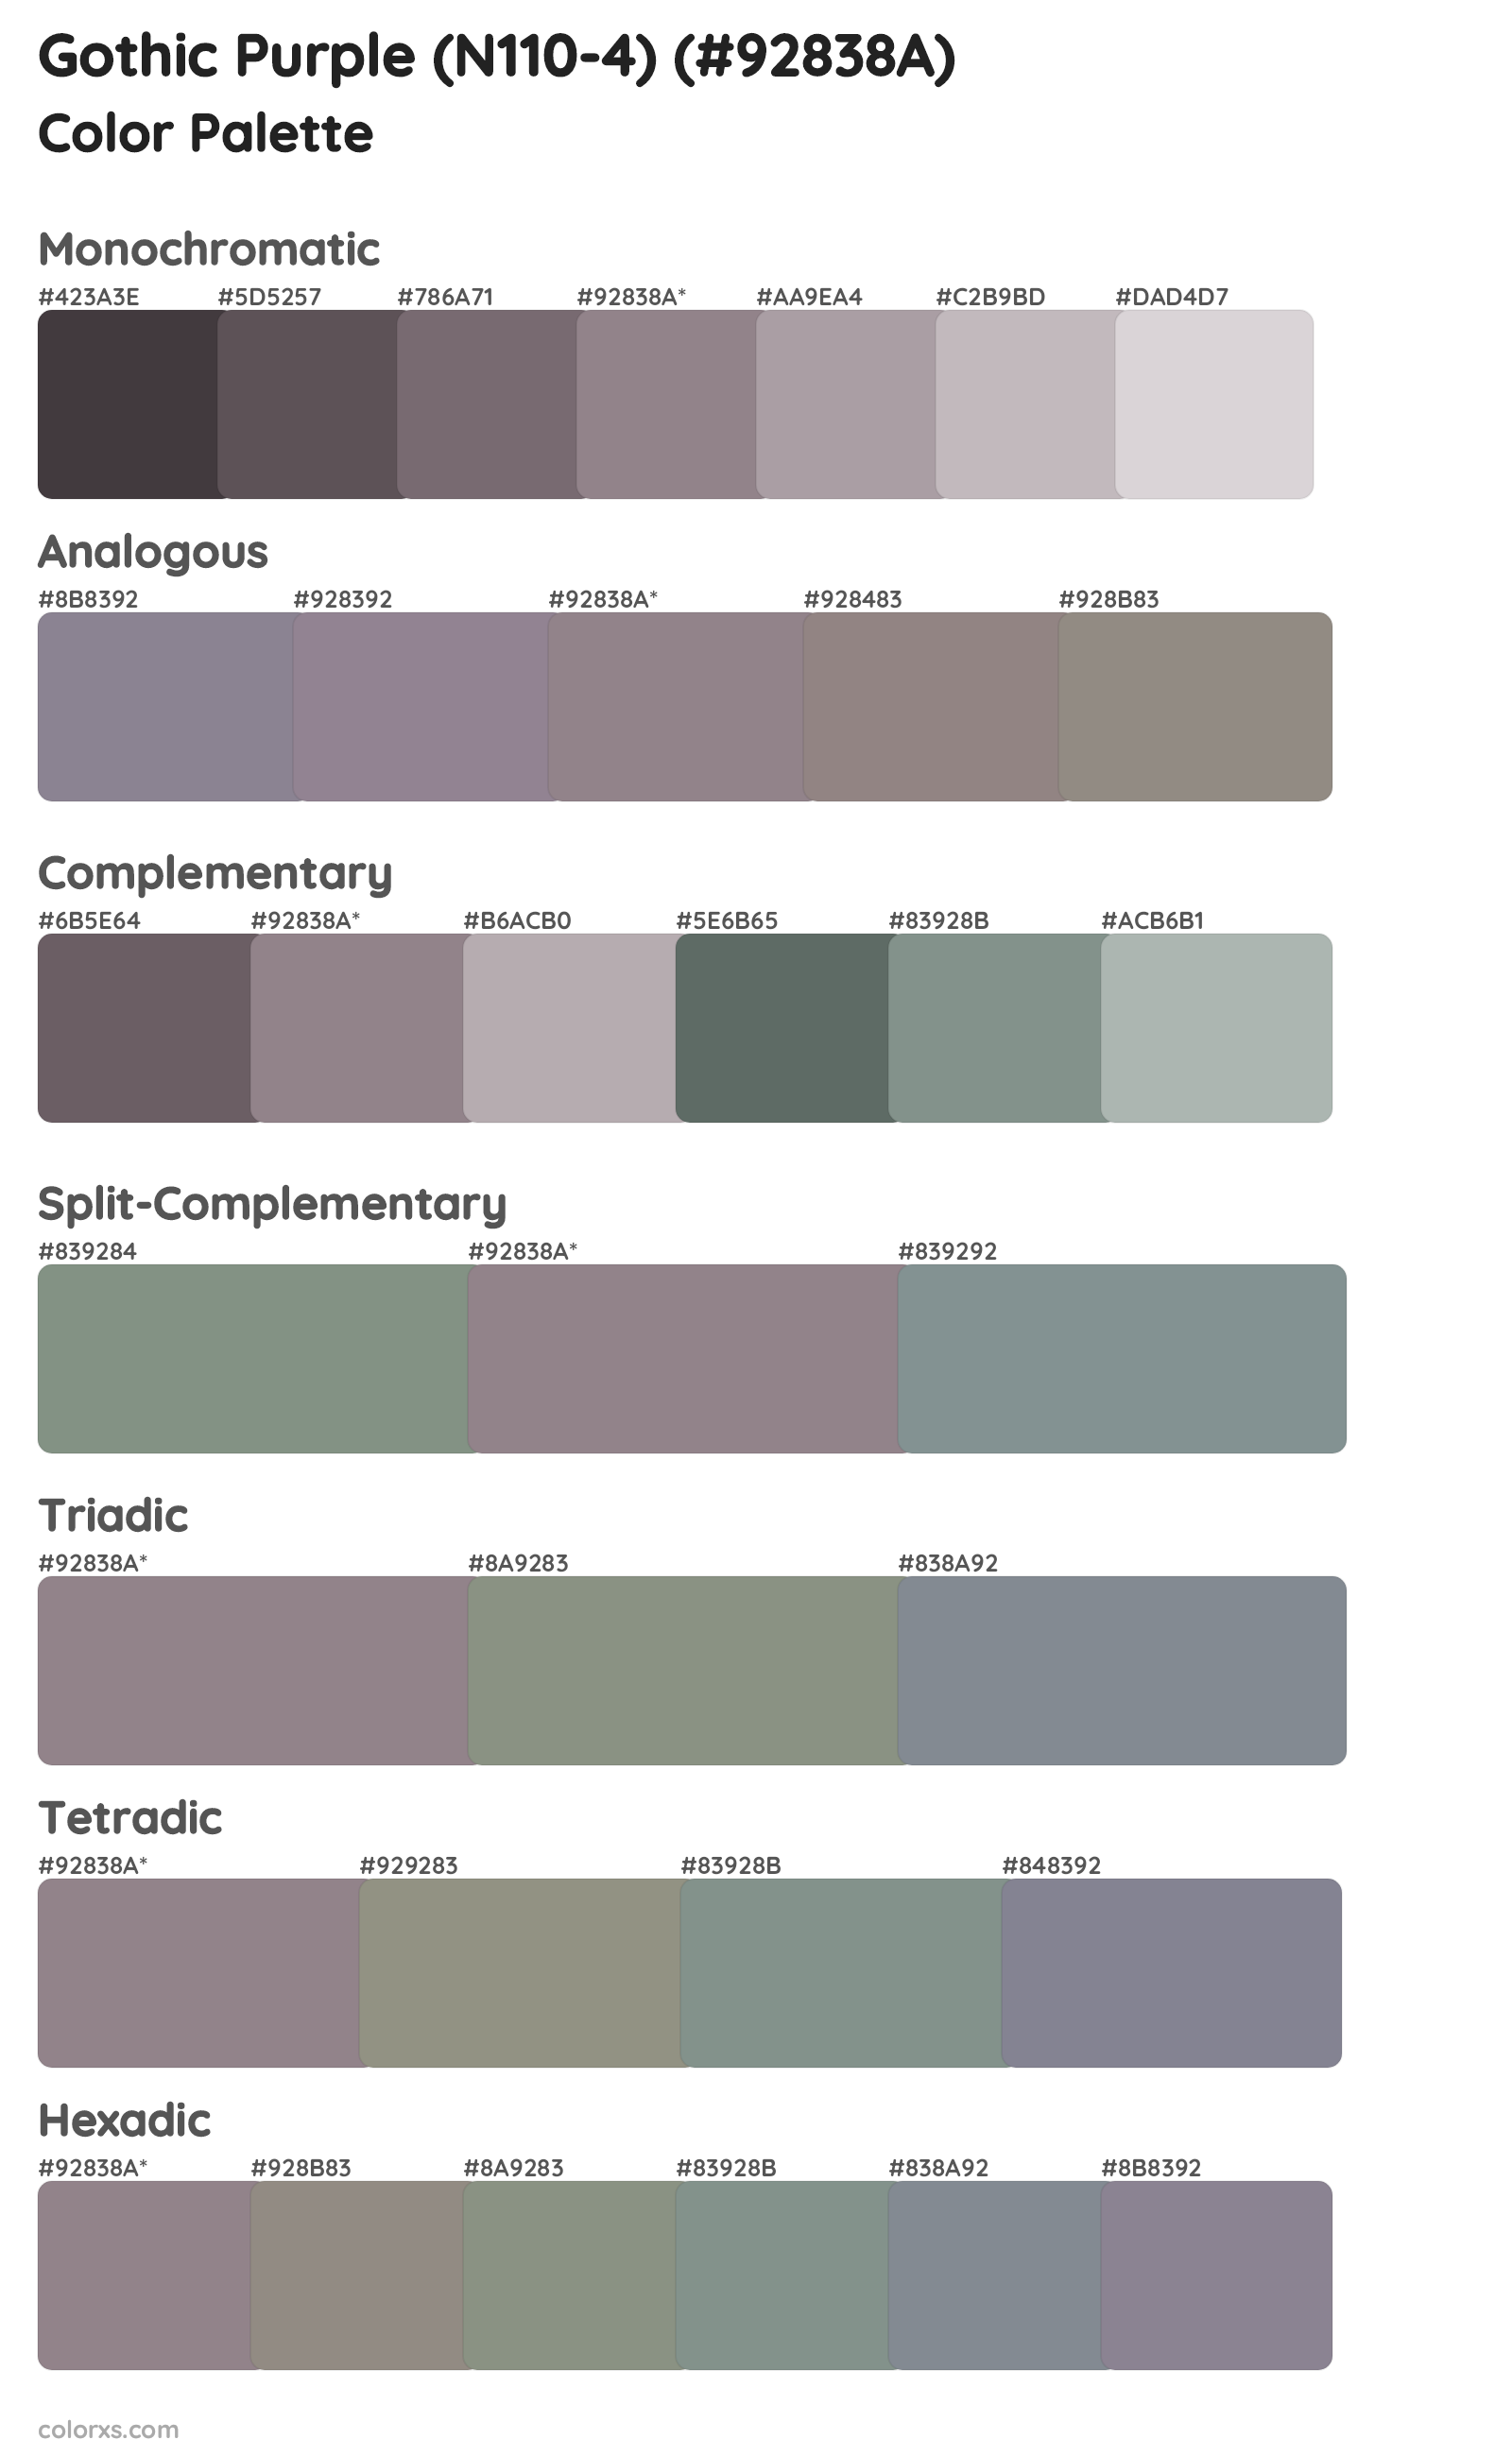 Gothic Purple (N110-4) Color Scheme Palettes